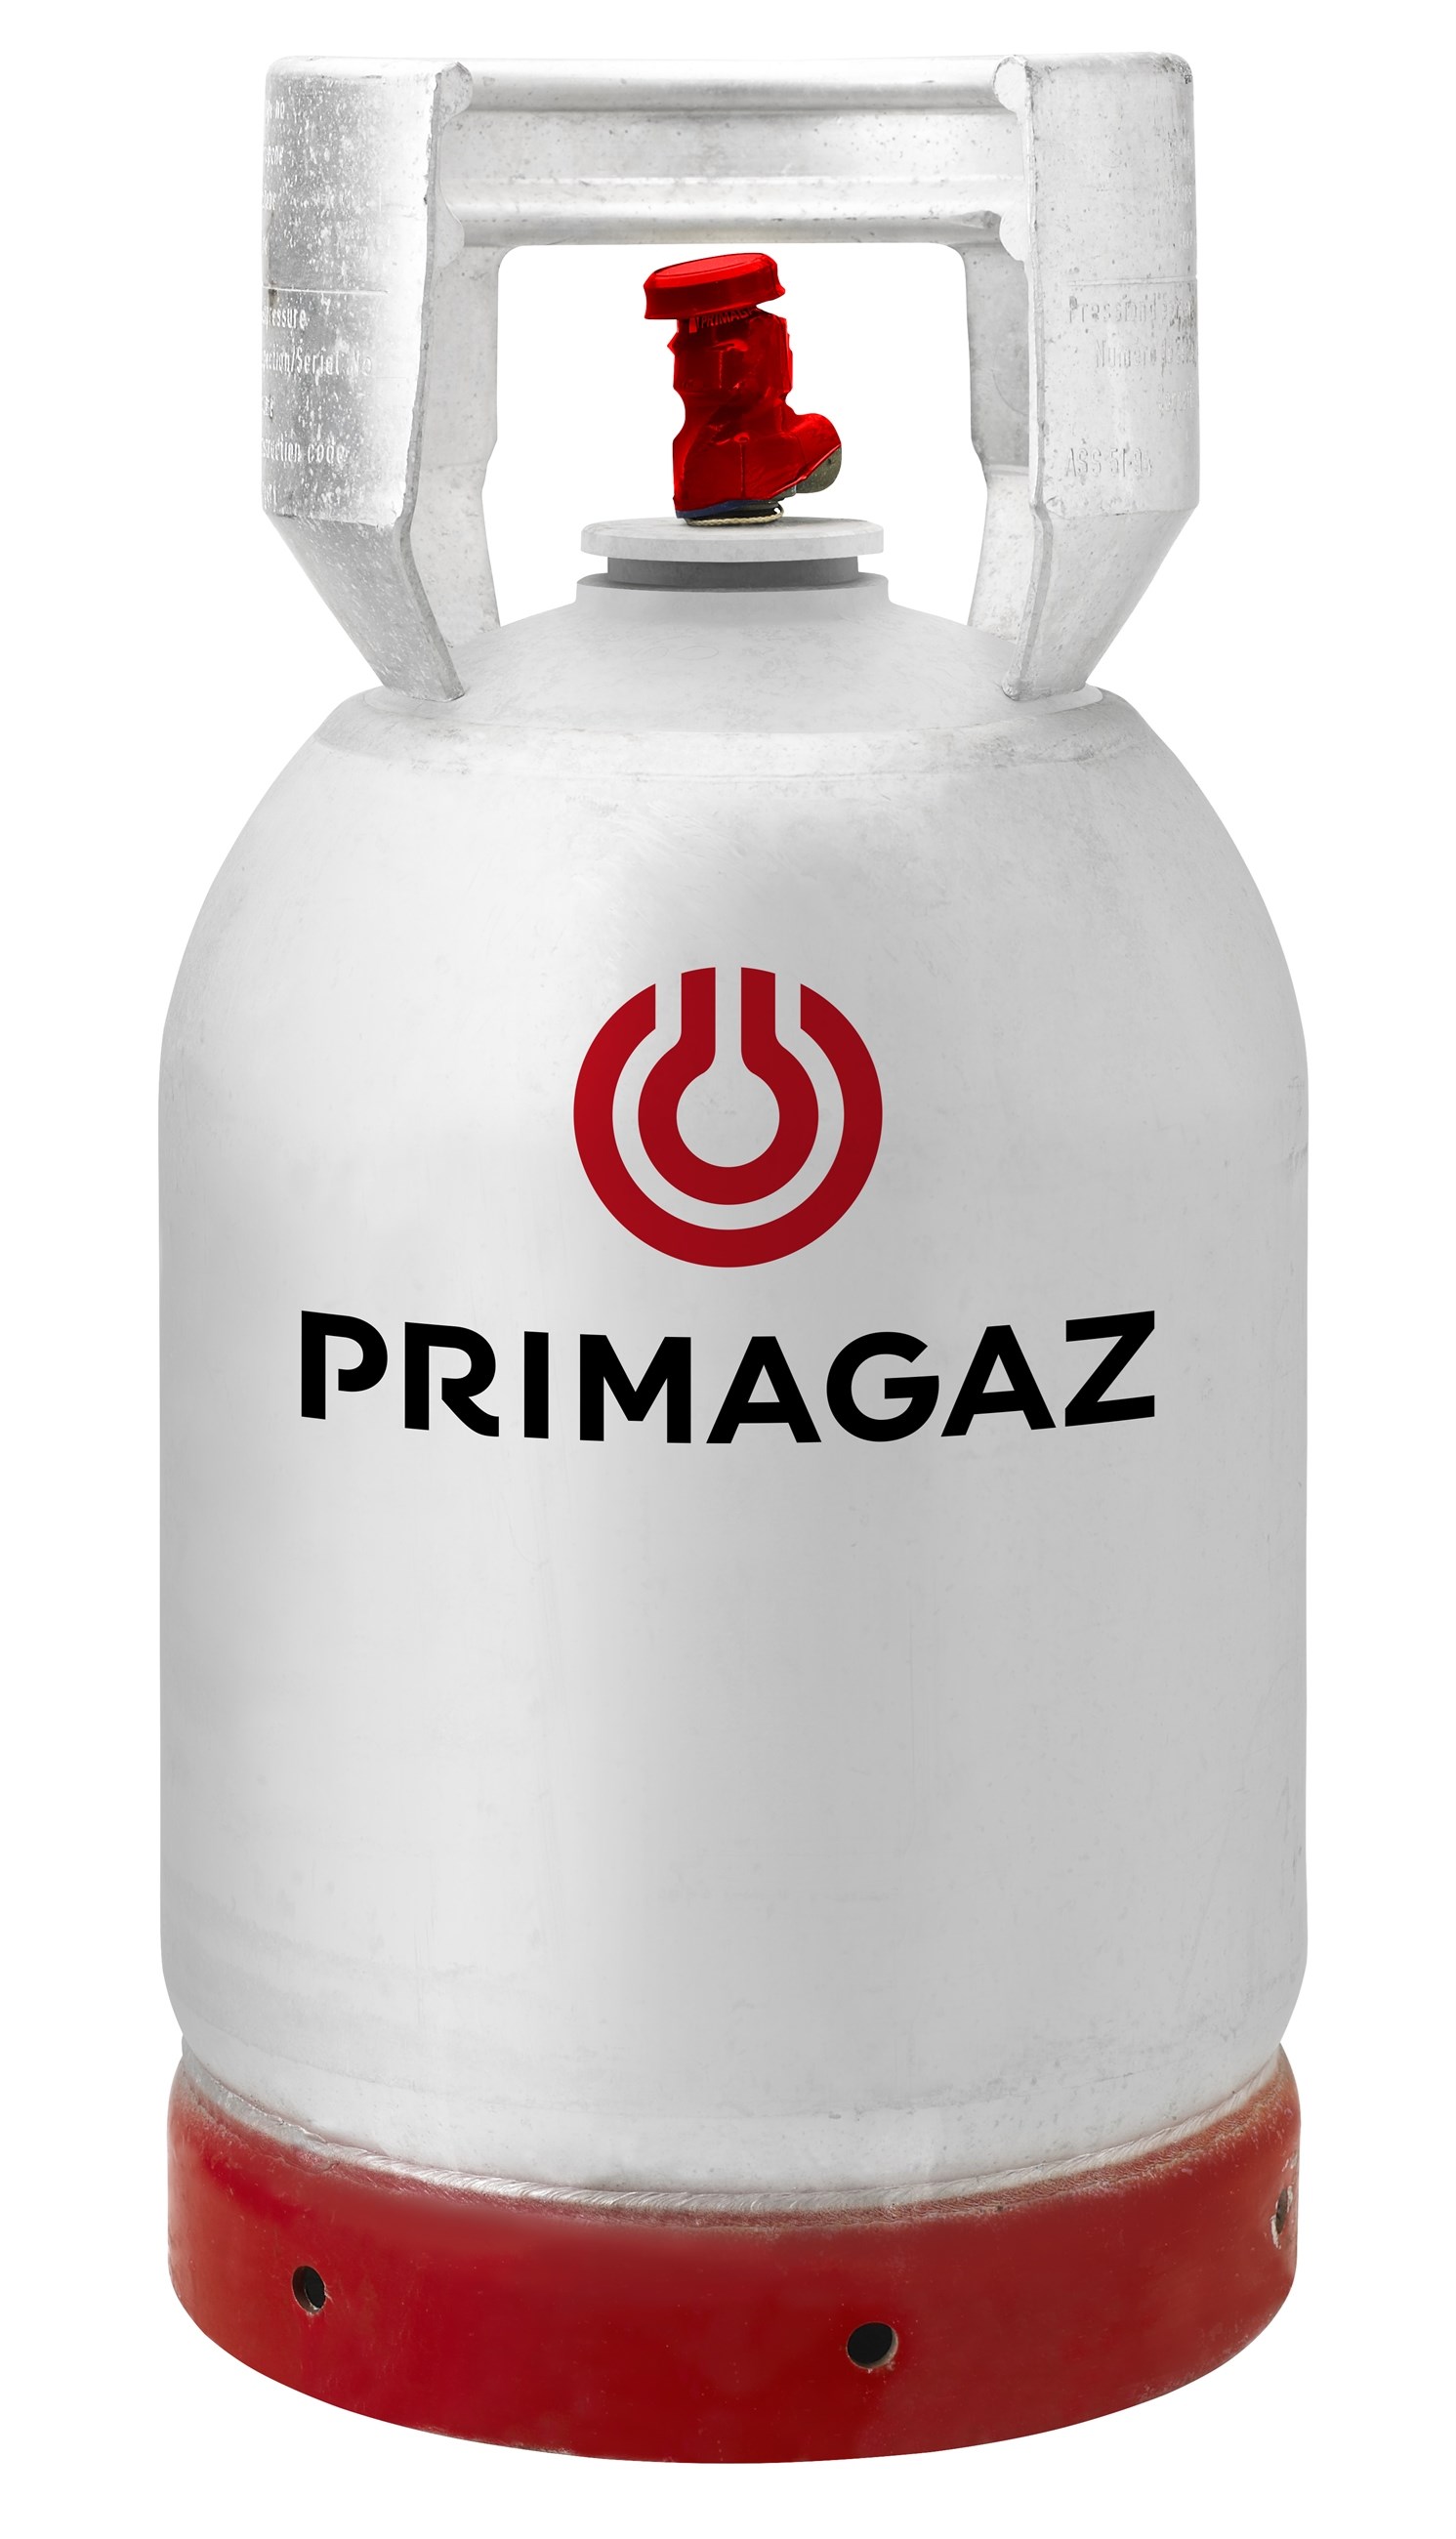 Primagaz forhandles på Fyn